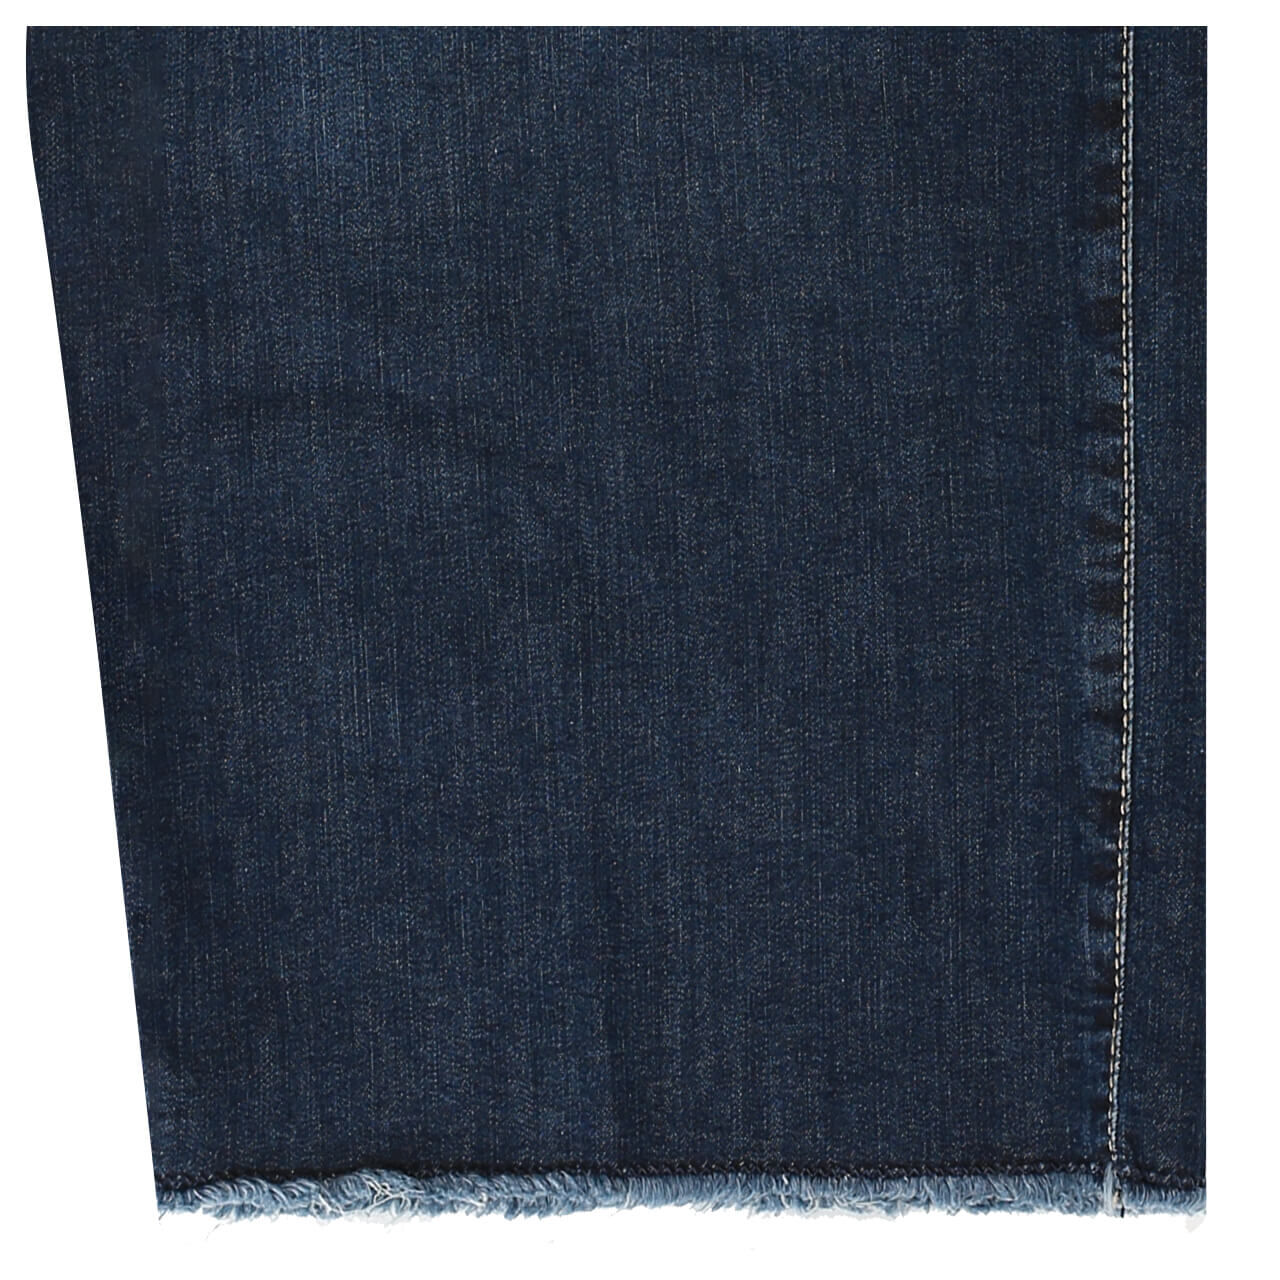 MAC Jeans Gracia (Greta) für Damen in Dunkelblau angewaschen, FarbNr.: D844